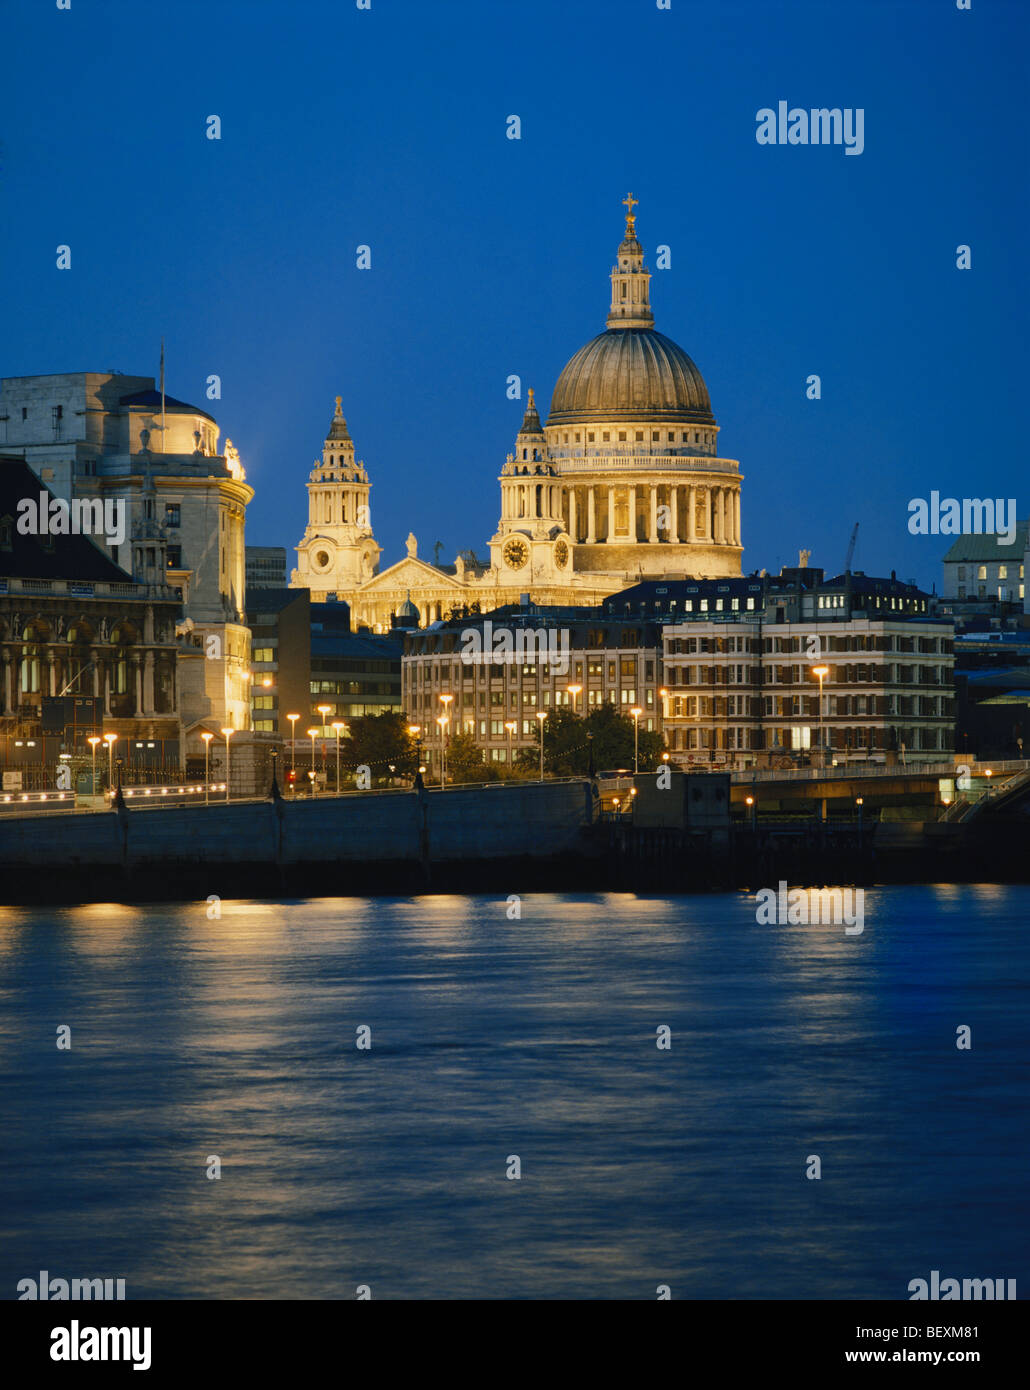 La Cathédrale de St Paul, vu sur la Tamise de nuit, Londres, Grande-Bretagne, FR, UK Banque D'Images